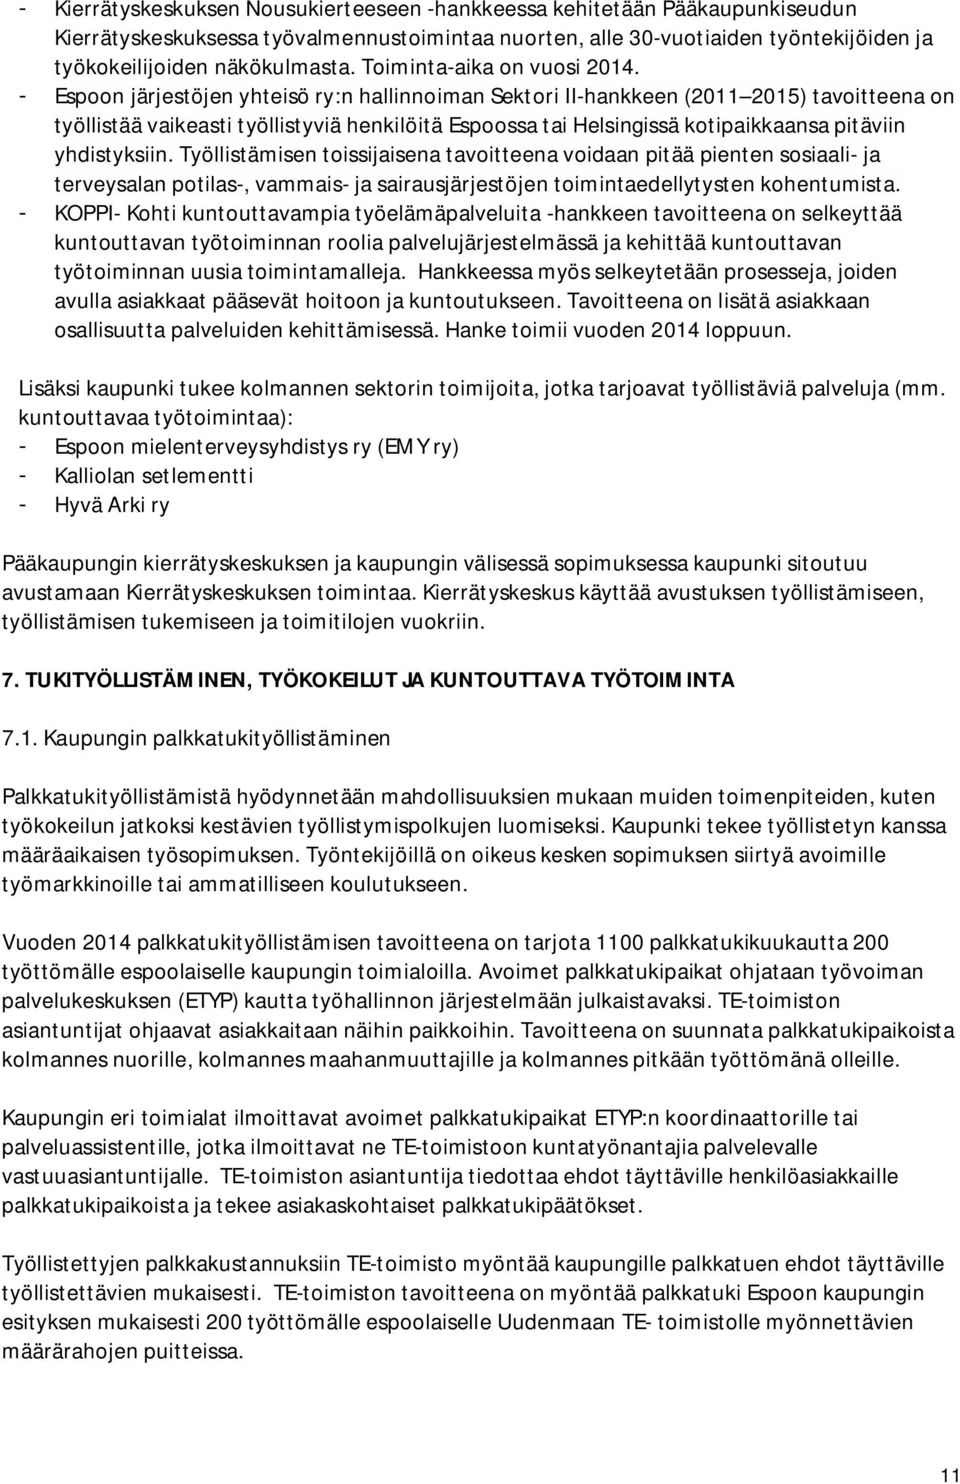 - Espoon järjestöjen yhteisö ry:n hallinnoiman Sektori II-hankkeen (2011 2015) tavoitteena on työllistää vaikeasti työllistyviä henkilöitä Espoossa tai Helsingissä kotipaikkaansa pitäviin